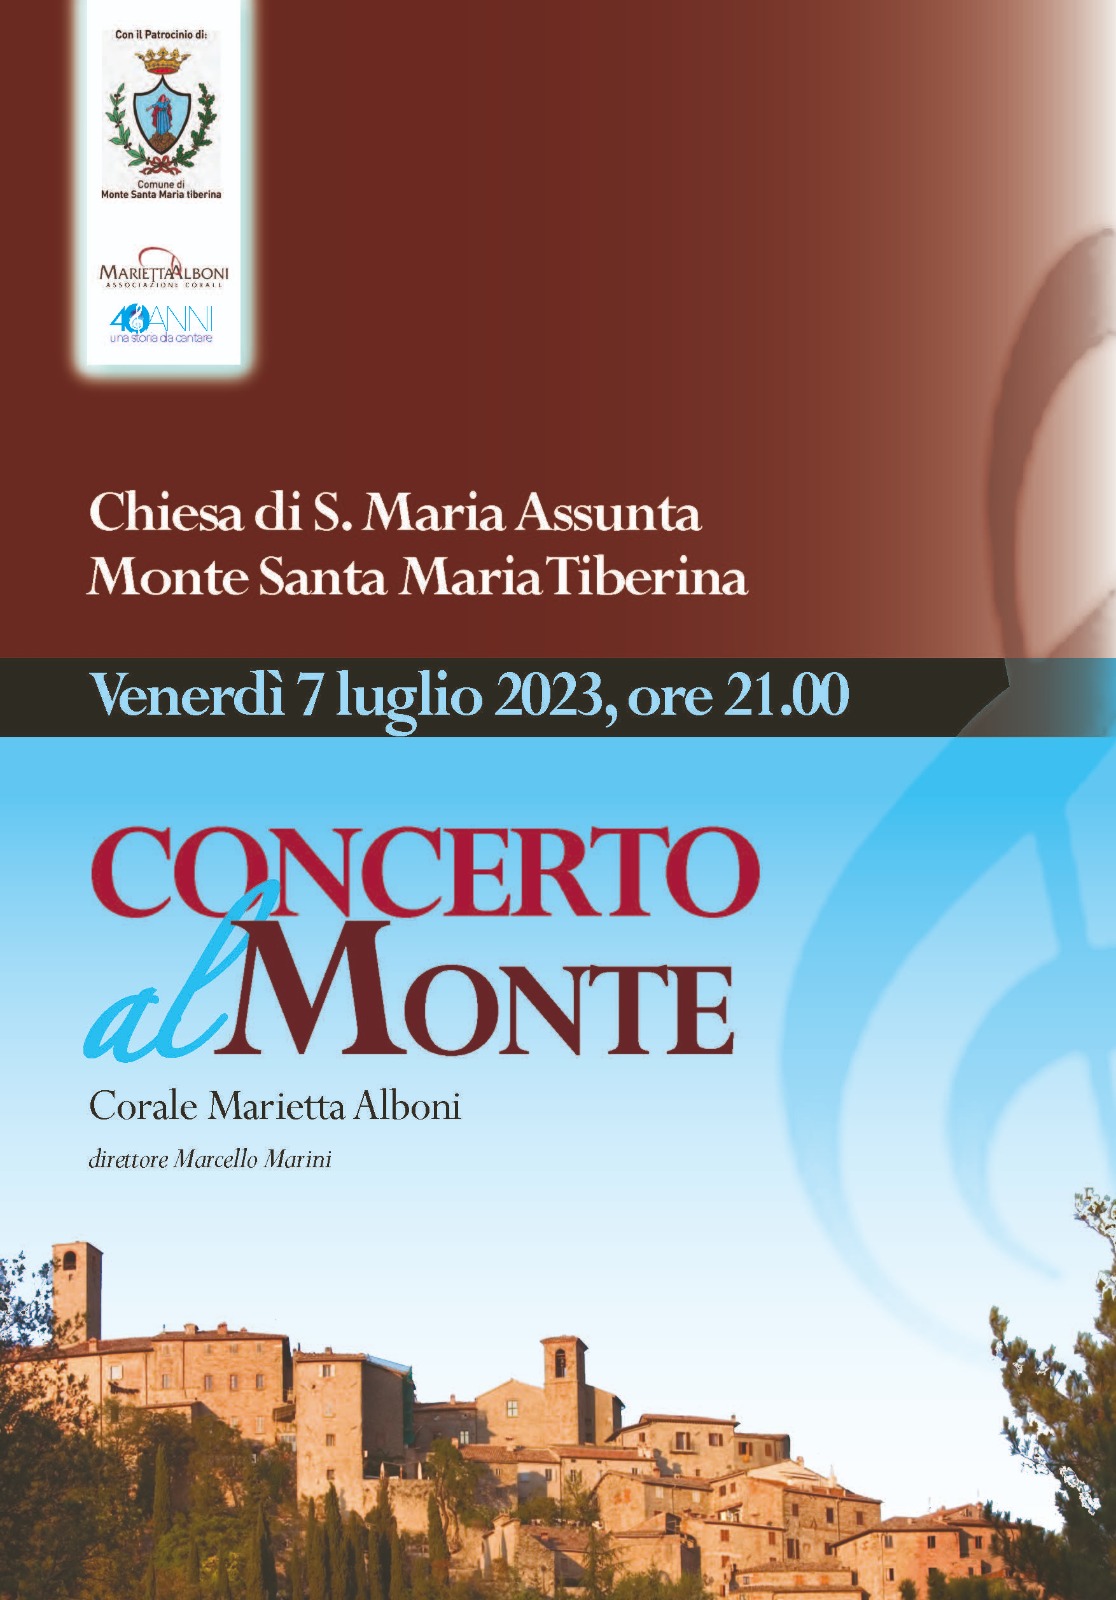 Corale Marietta Alboni: CONCERTO AL MONTE (7 luglio 2023)